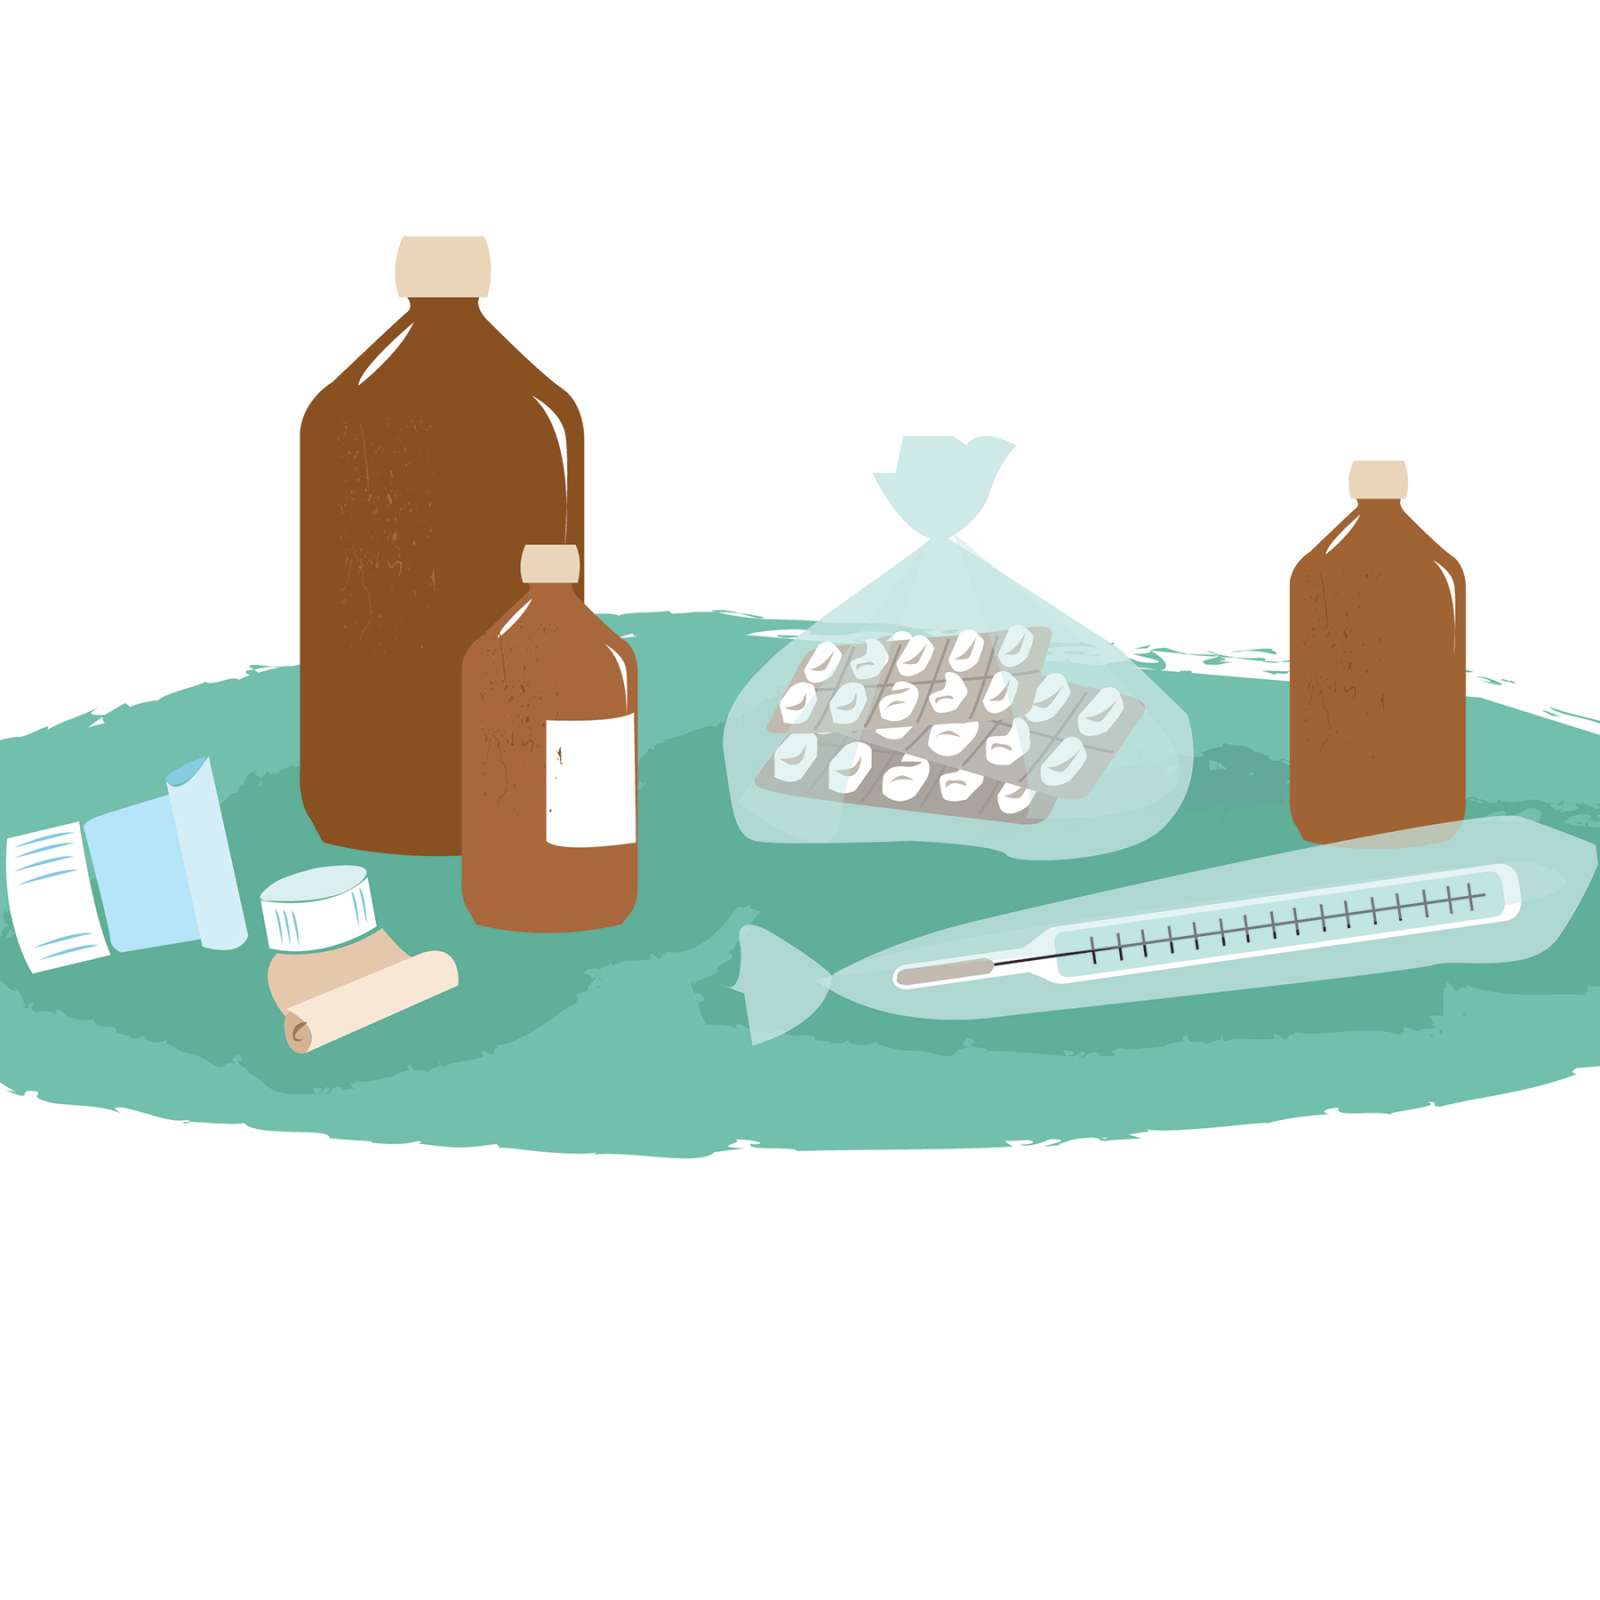 Näin kierrätät lääkejätteen: poista pakkaukset ja vie apteekkiin